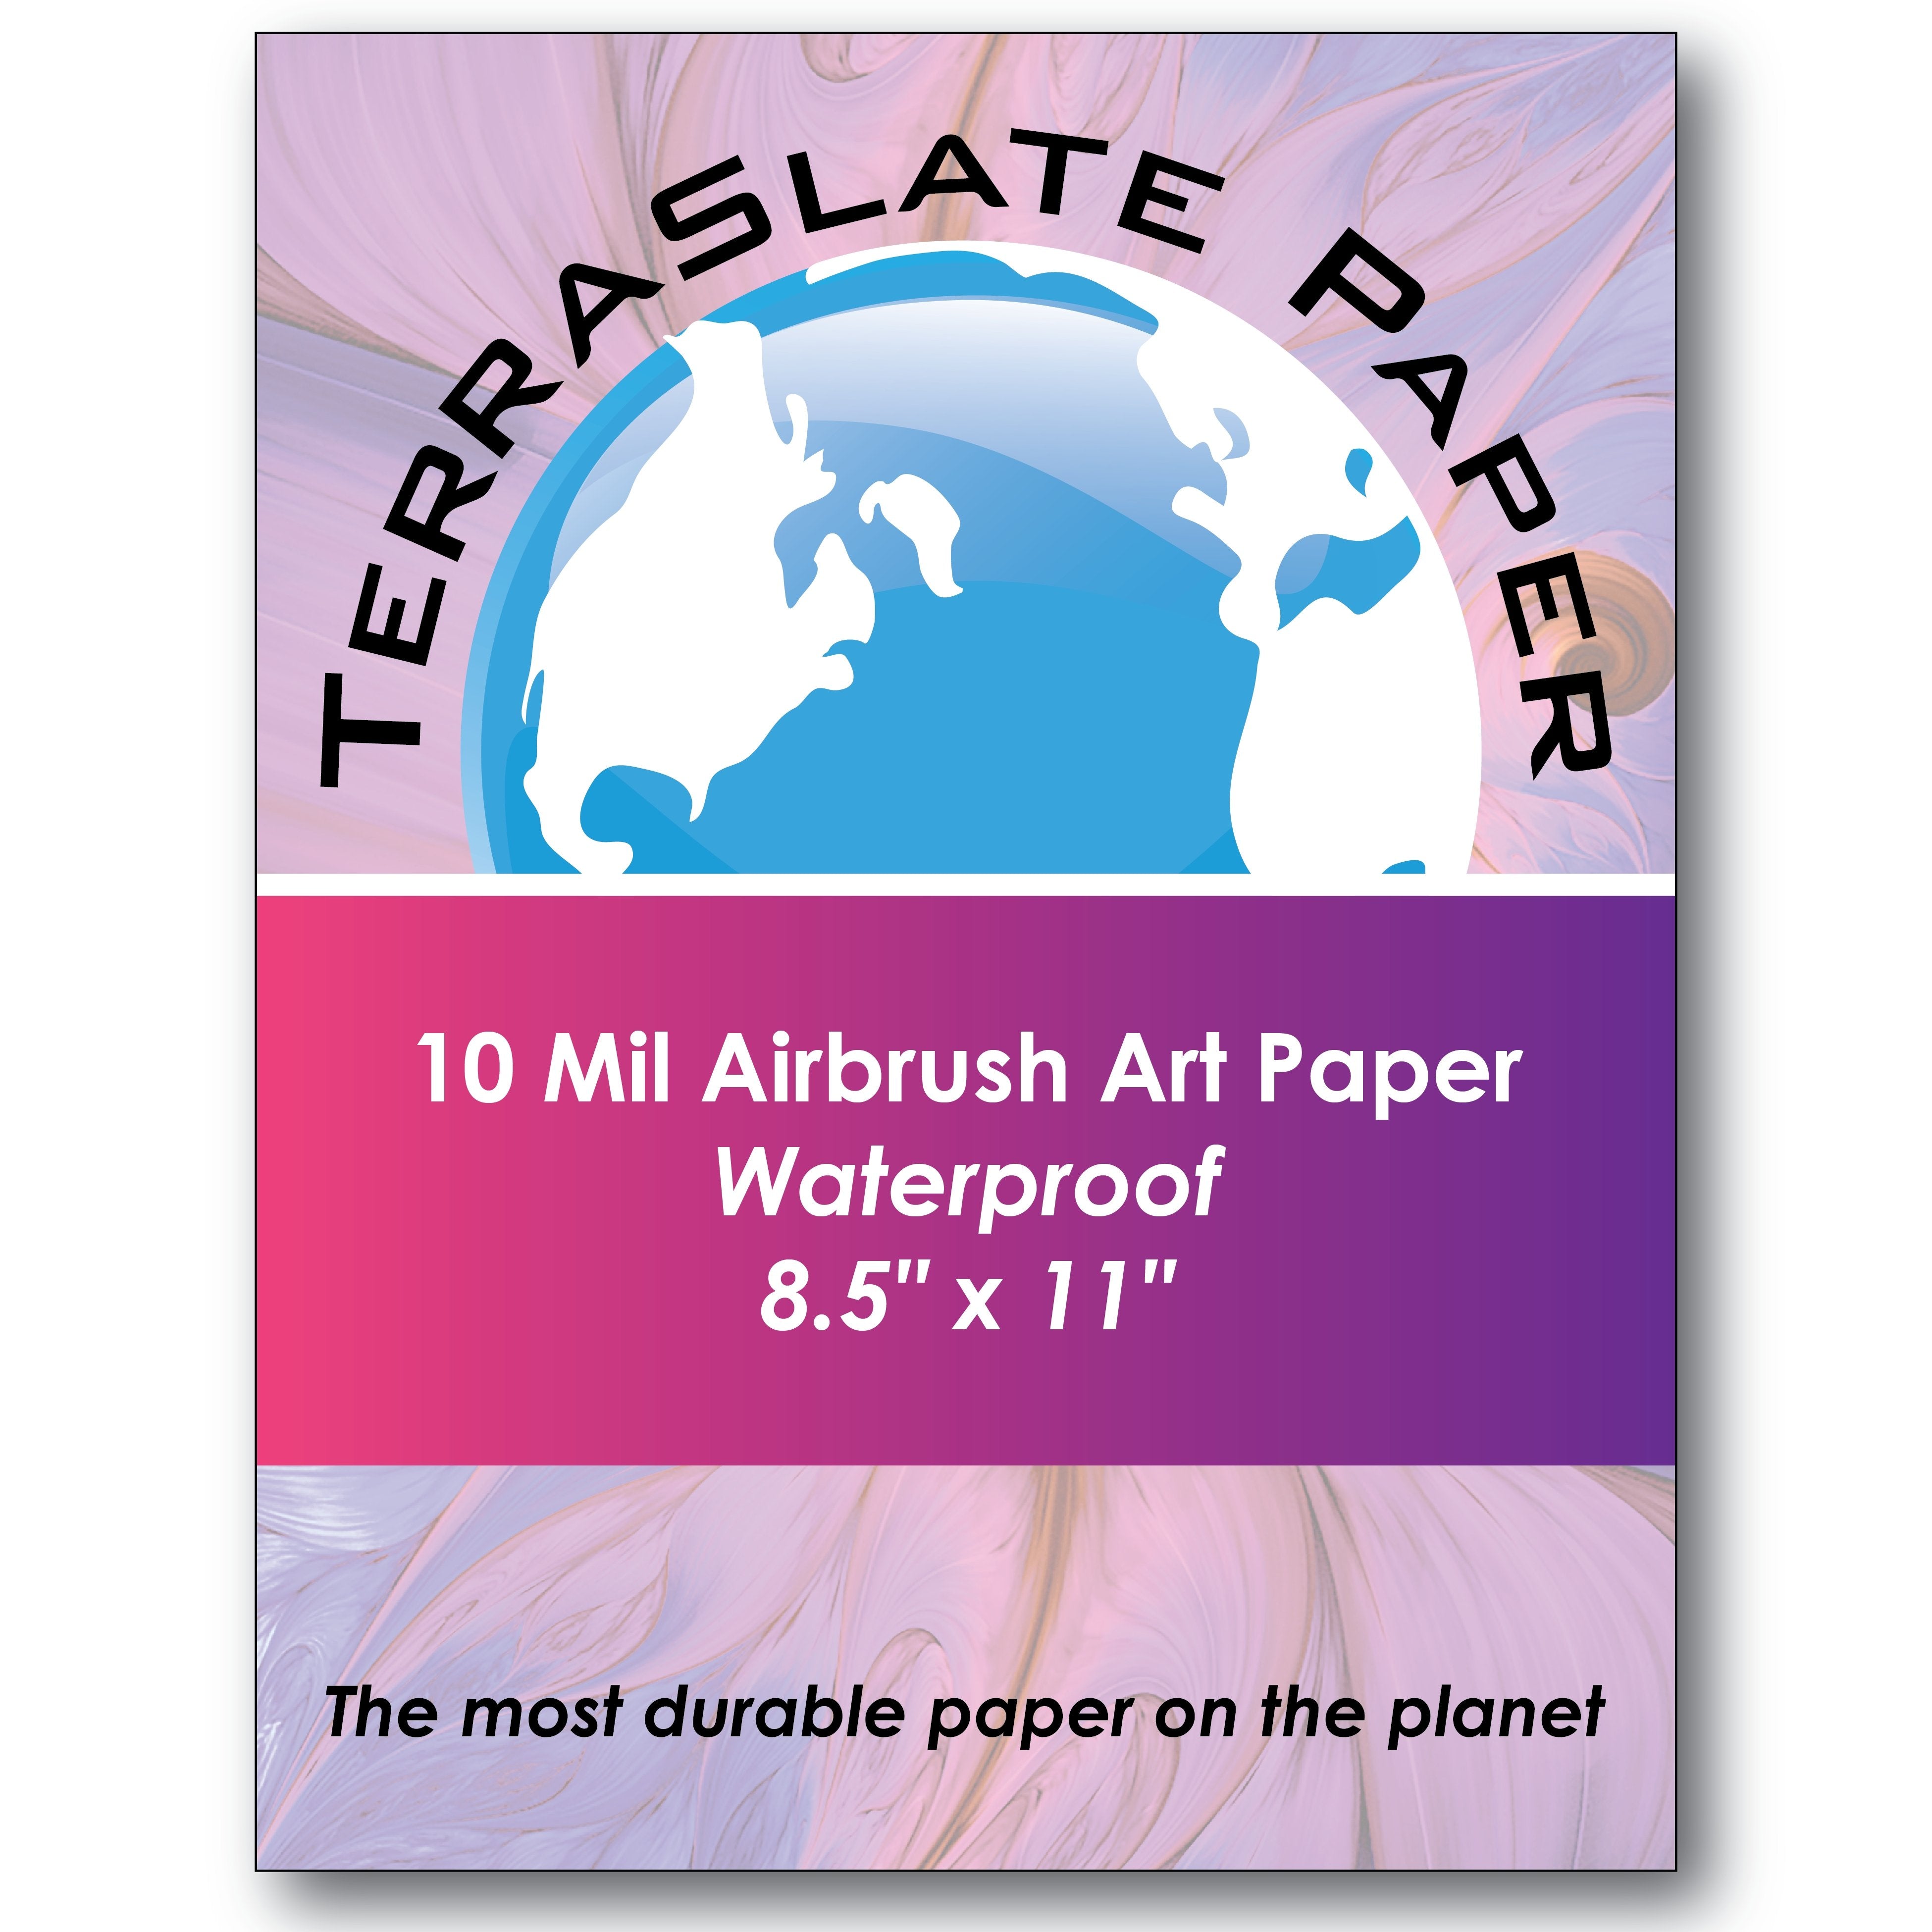 10 Mil Airbrush Art - 8.5" x 11" - TerraSlate Waterproof Paper